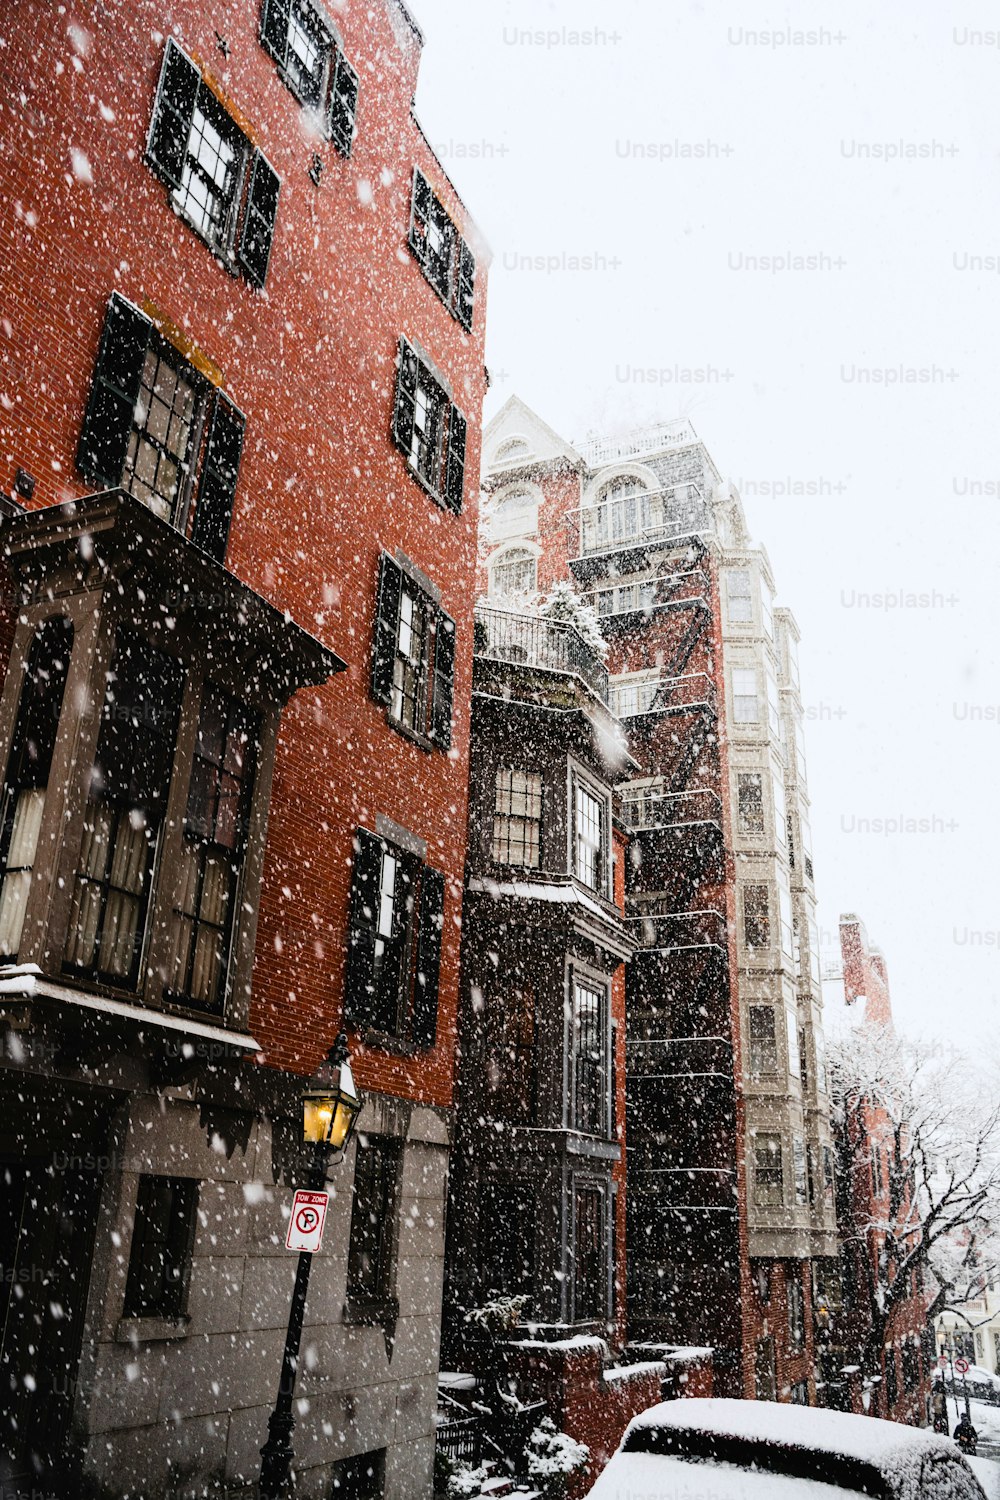 Ein verschneiter Tag in einer Stadt mit Gebäuden und Autos